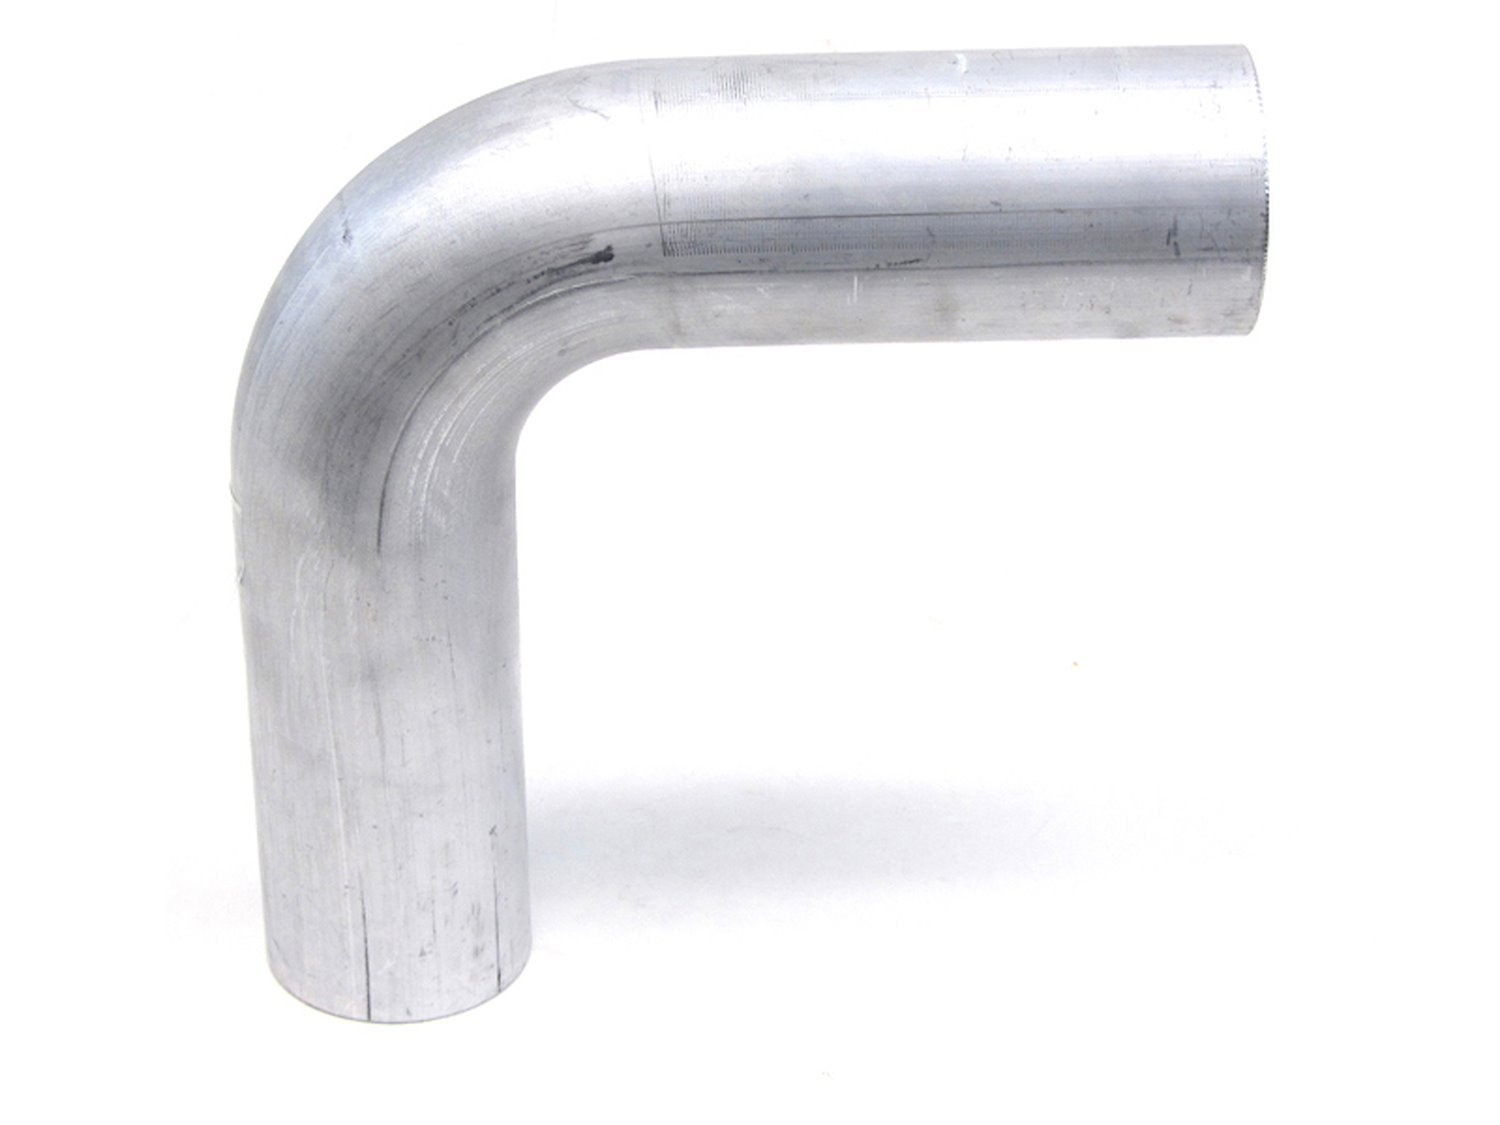 AT90-200-CLR-2 Aluminum Elbow Tube, 6061 Aluminum, 90-Degree Bend Elbow Tubing, 2 in. OD, Tight Radius, 2 in. CLR